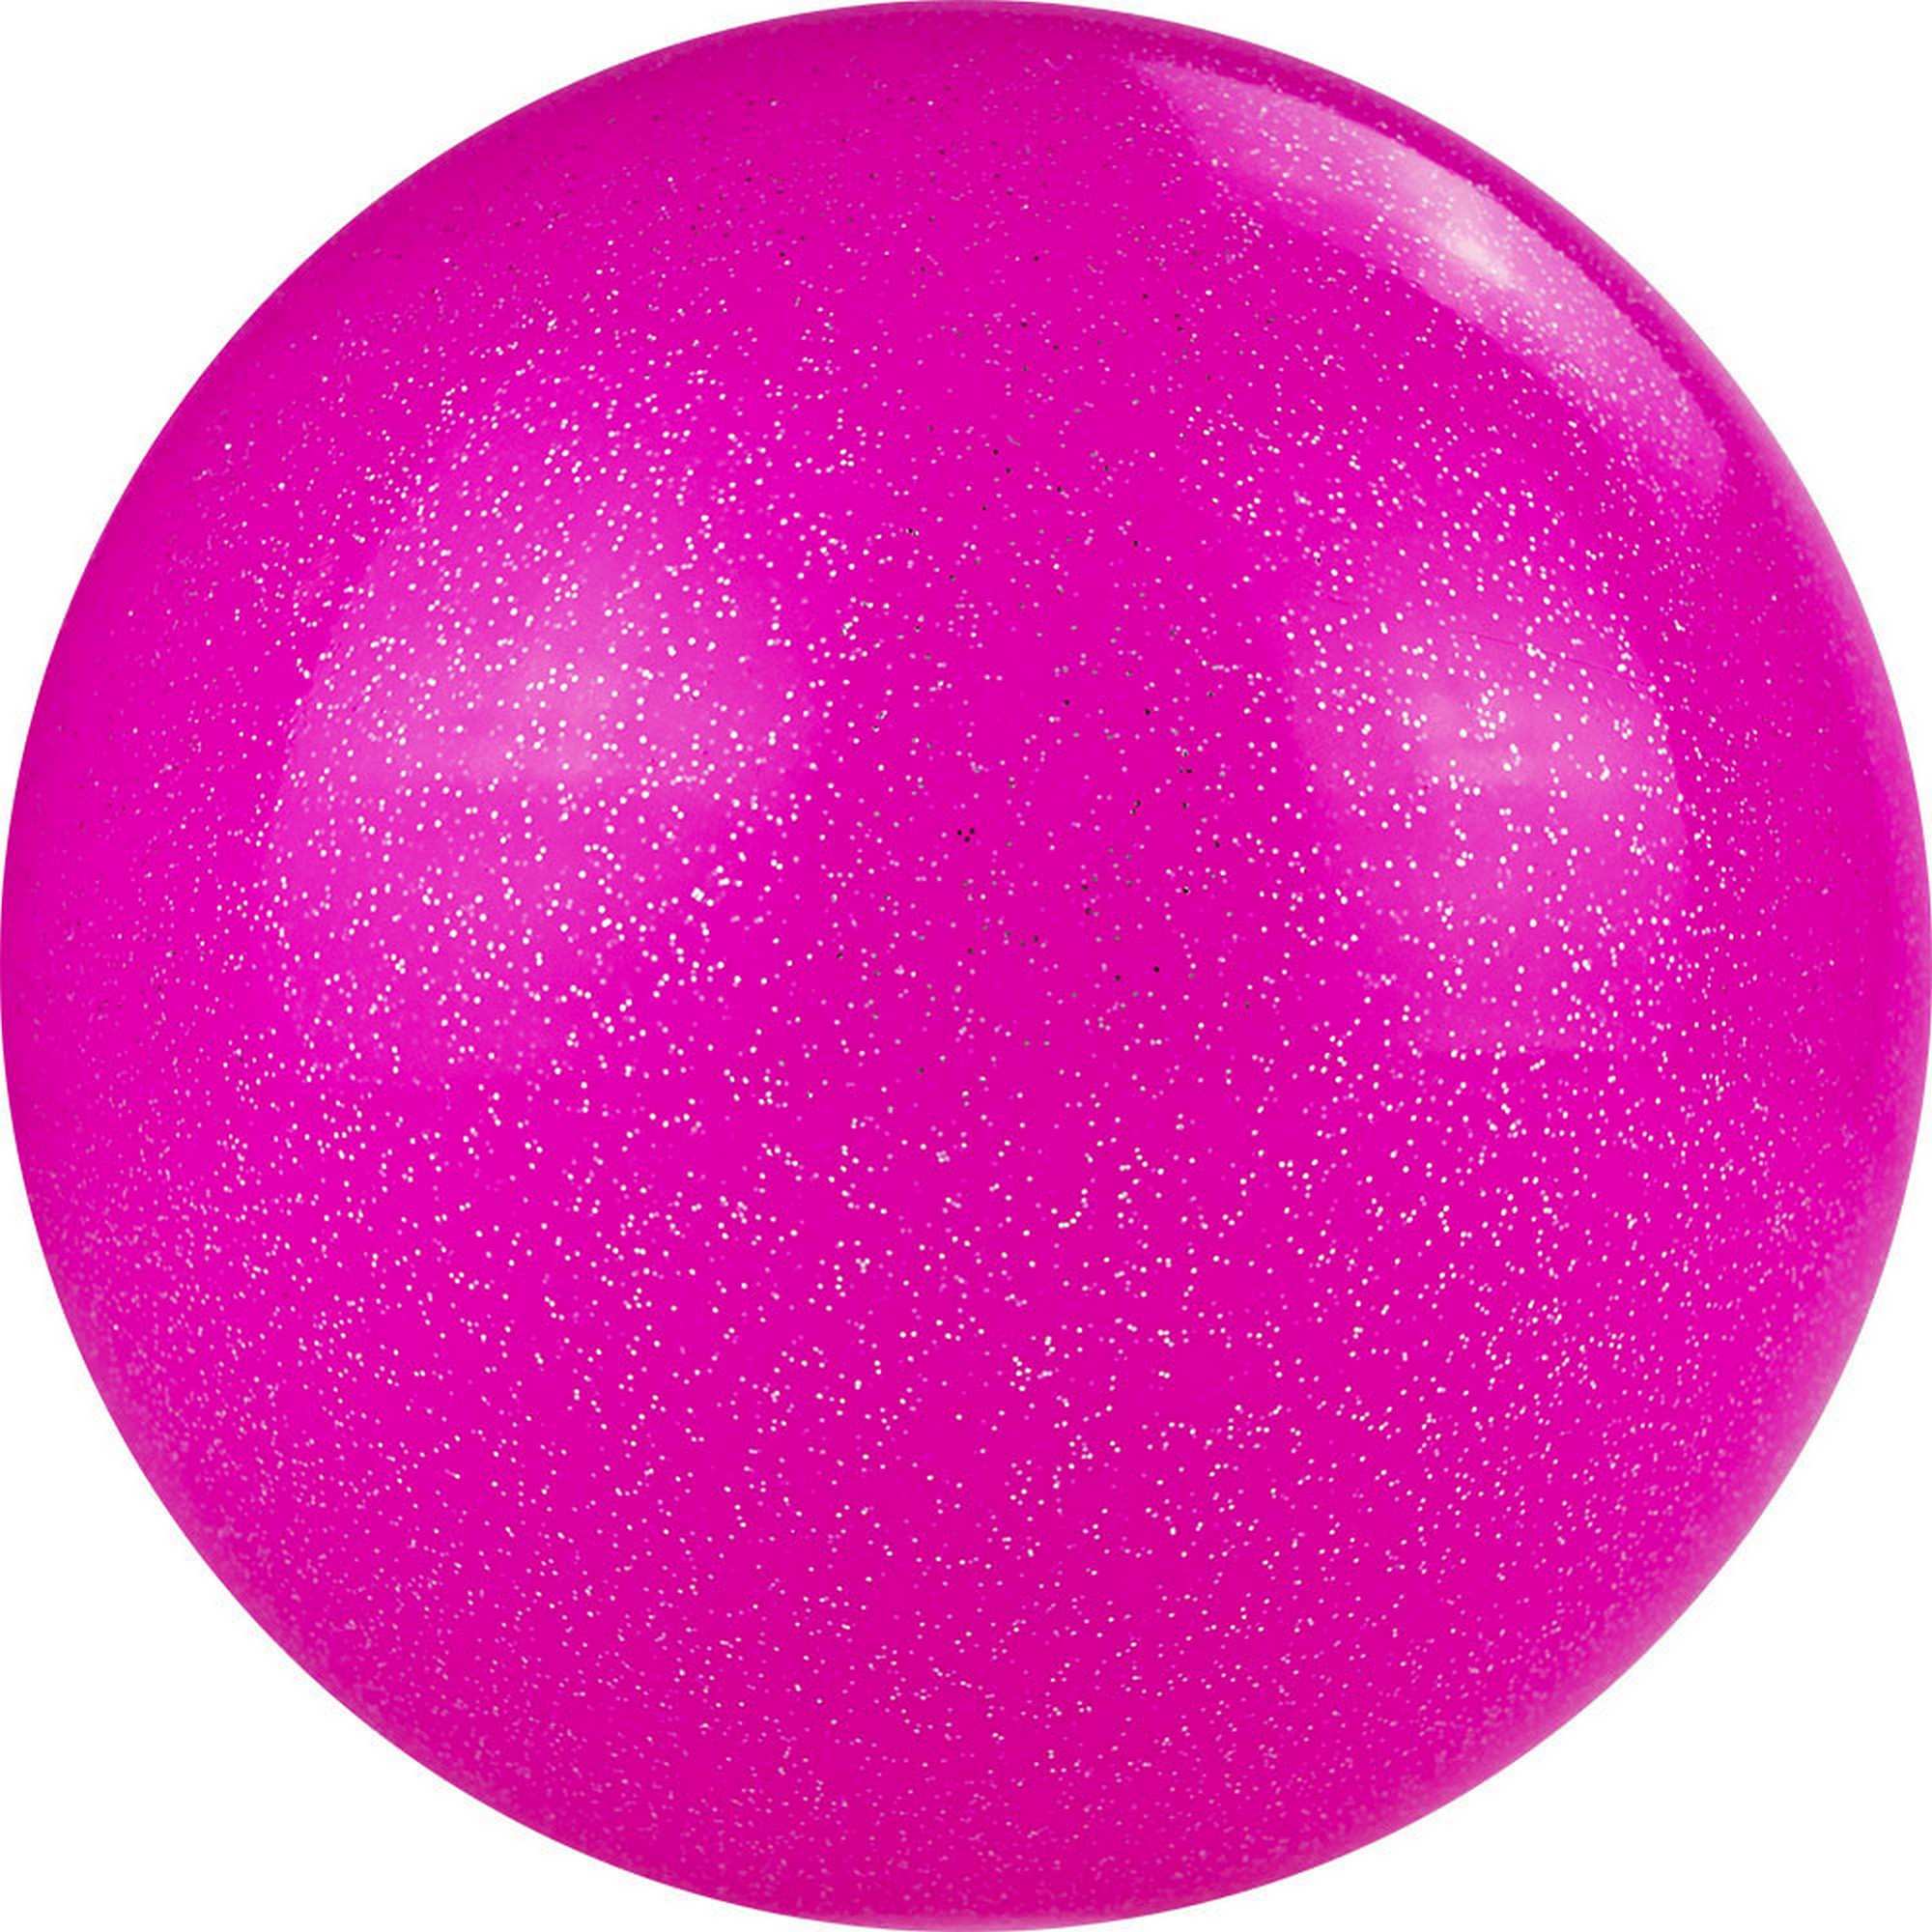 Мяч для художественной гимнастики d19 см Torres ПВХ AGP-19-10 розовый с блестками 2000_2000